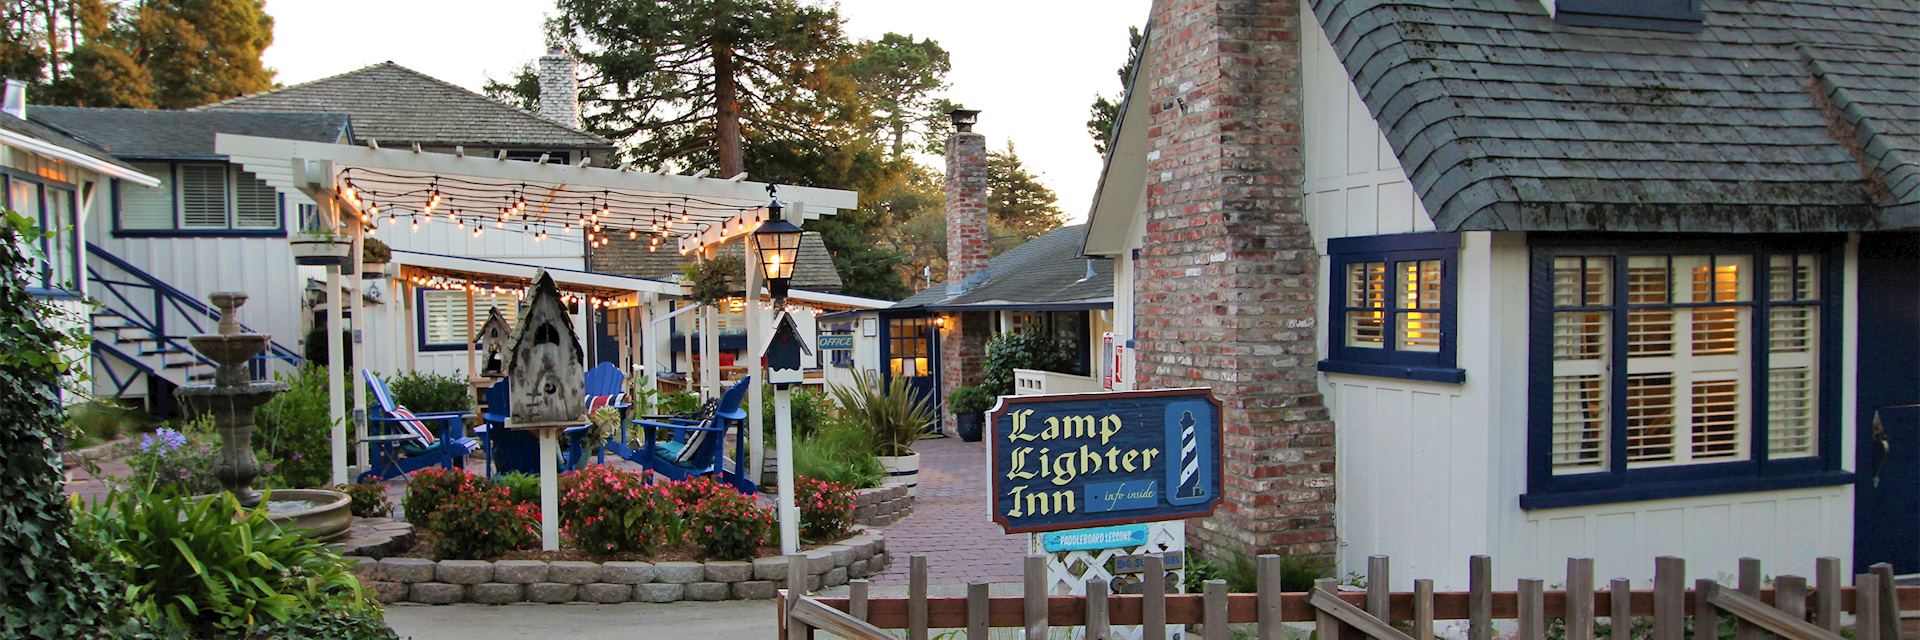 Lamp Lighter Inn, Carmel